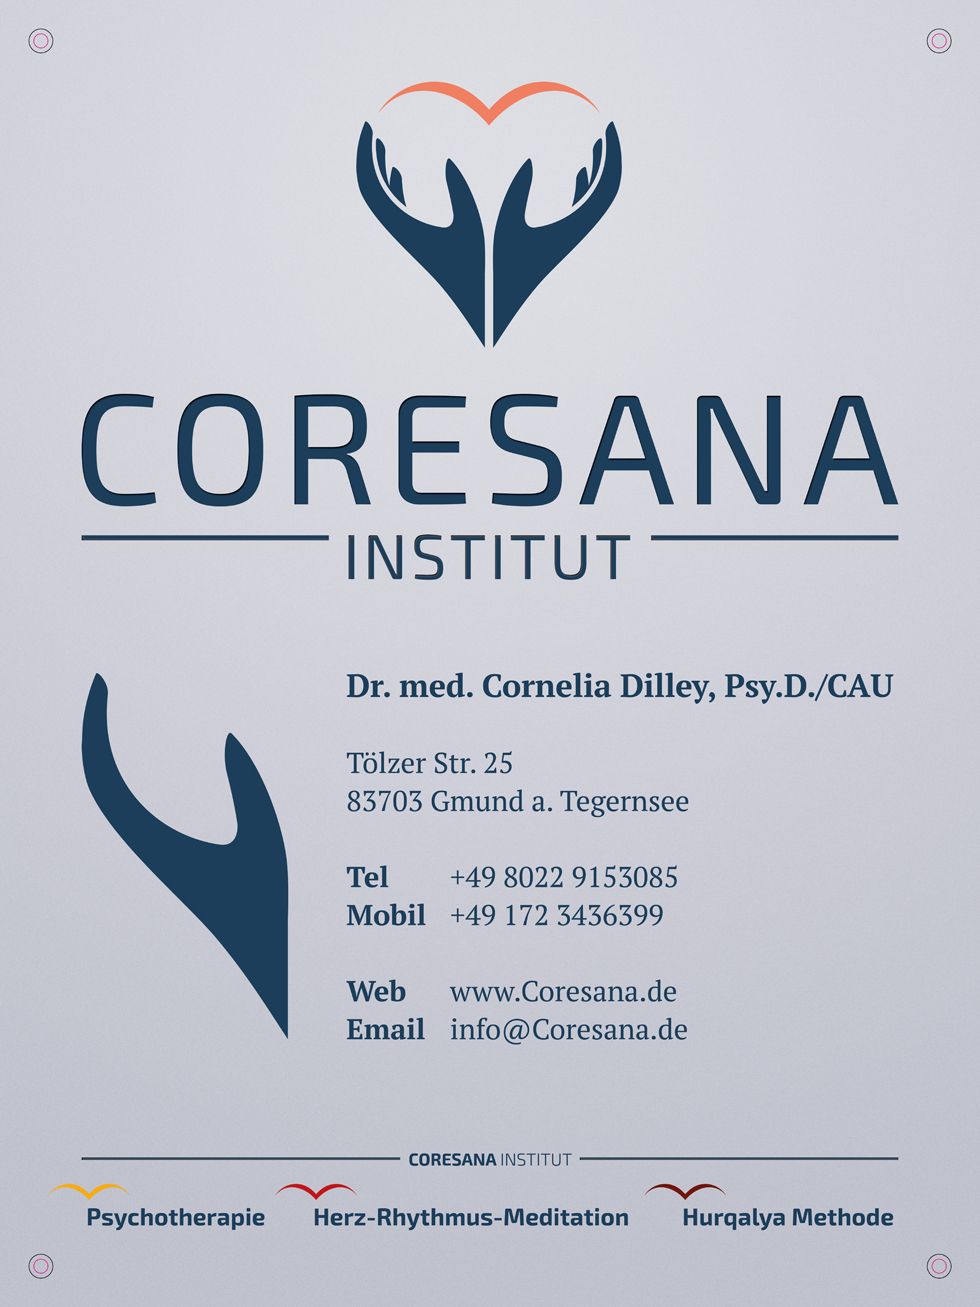 CoreSana Institut